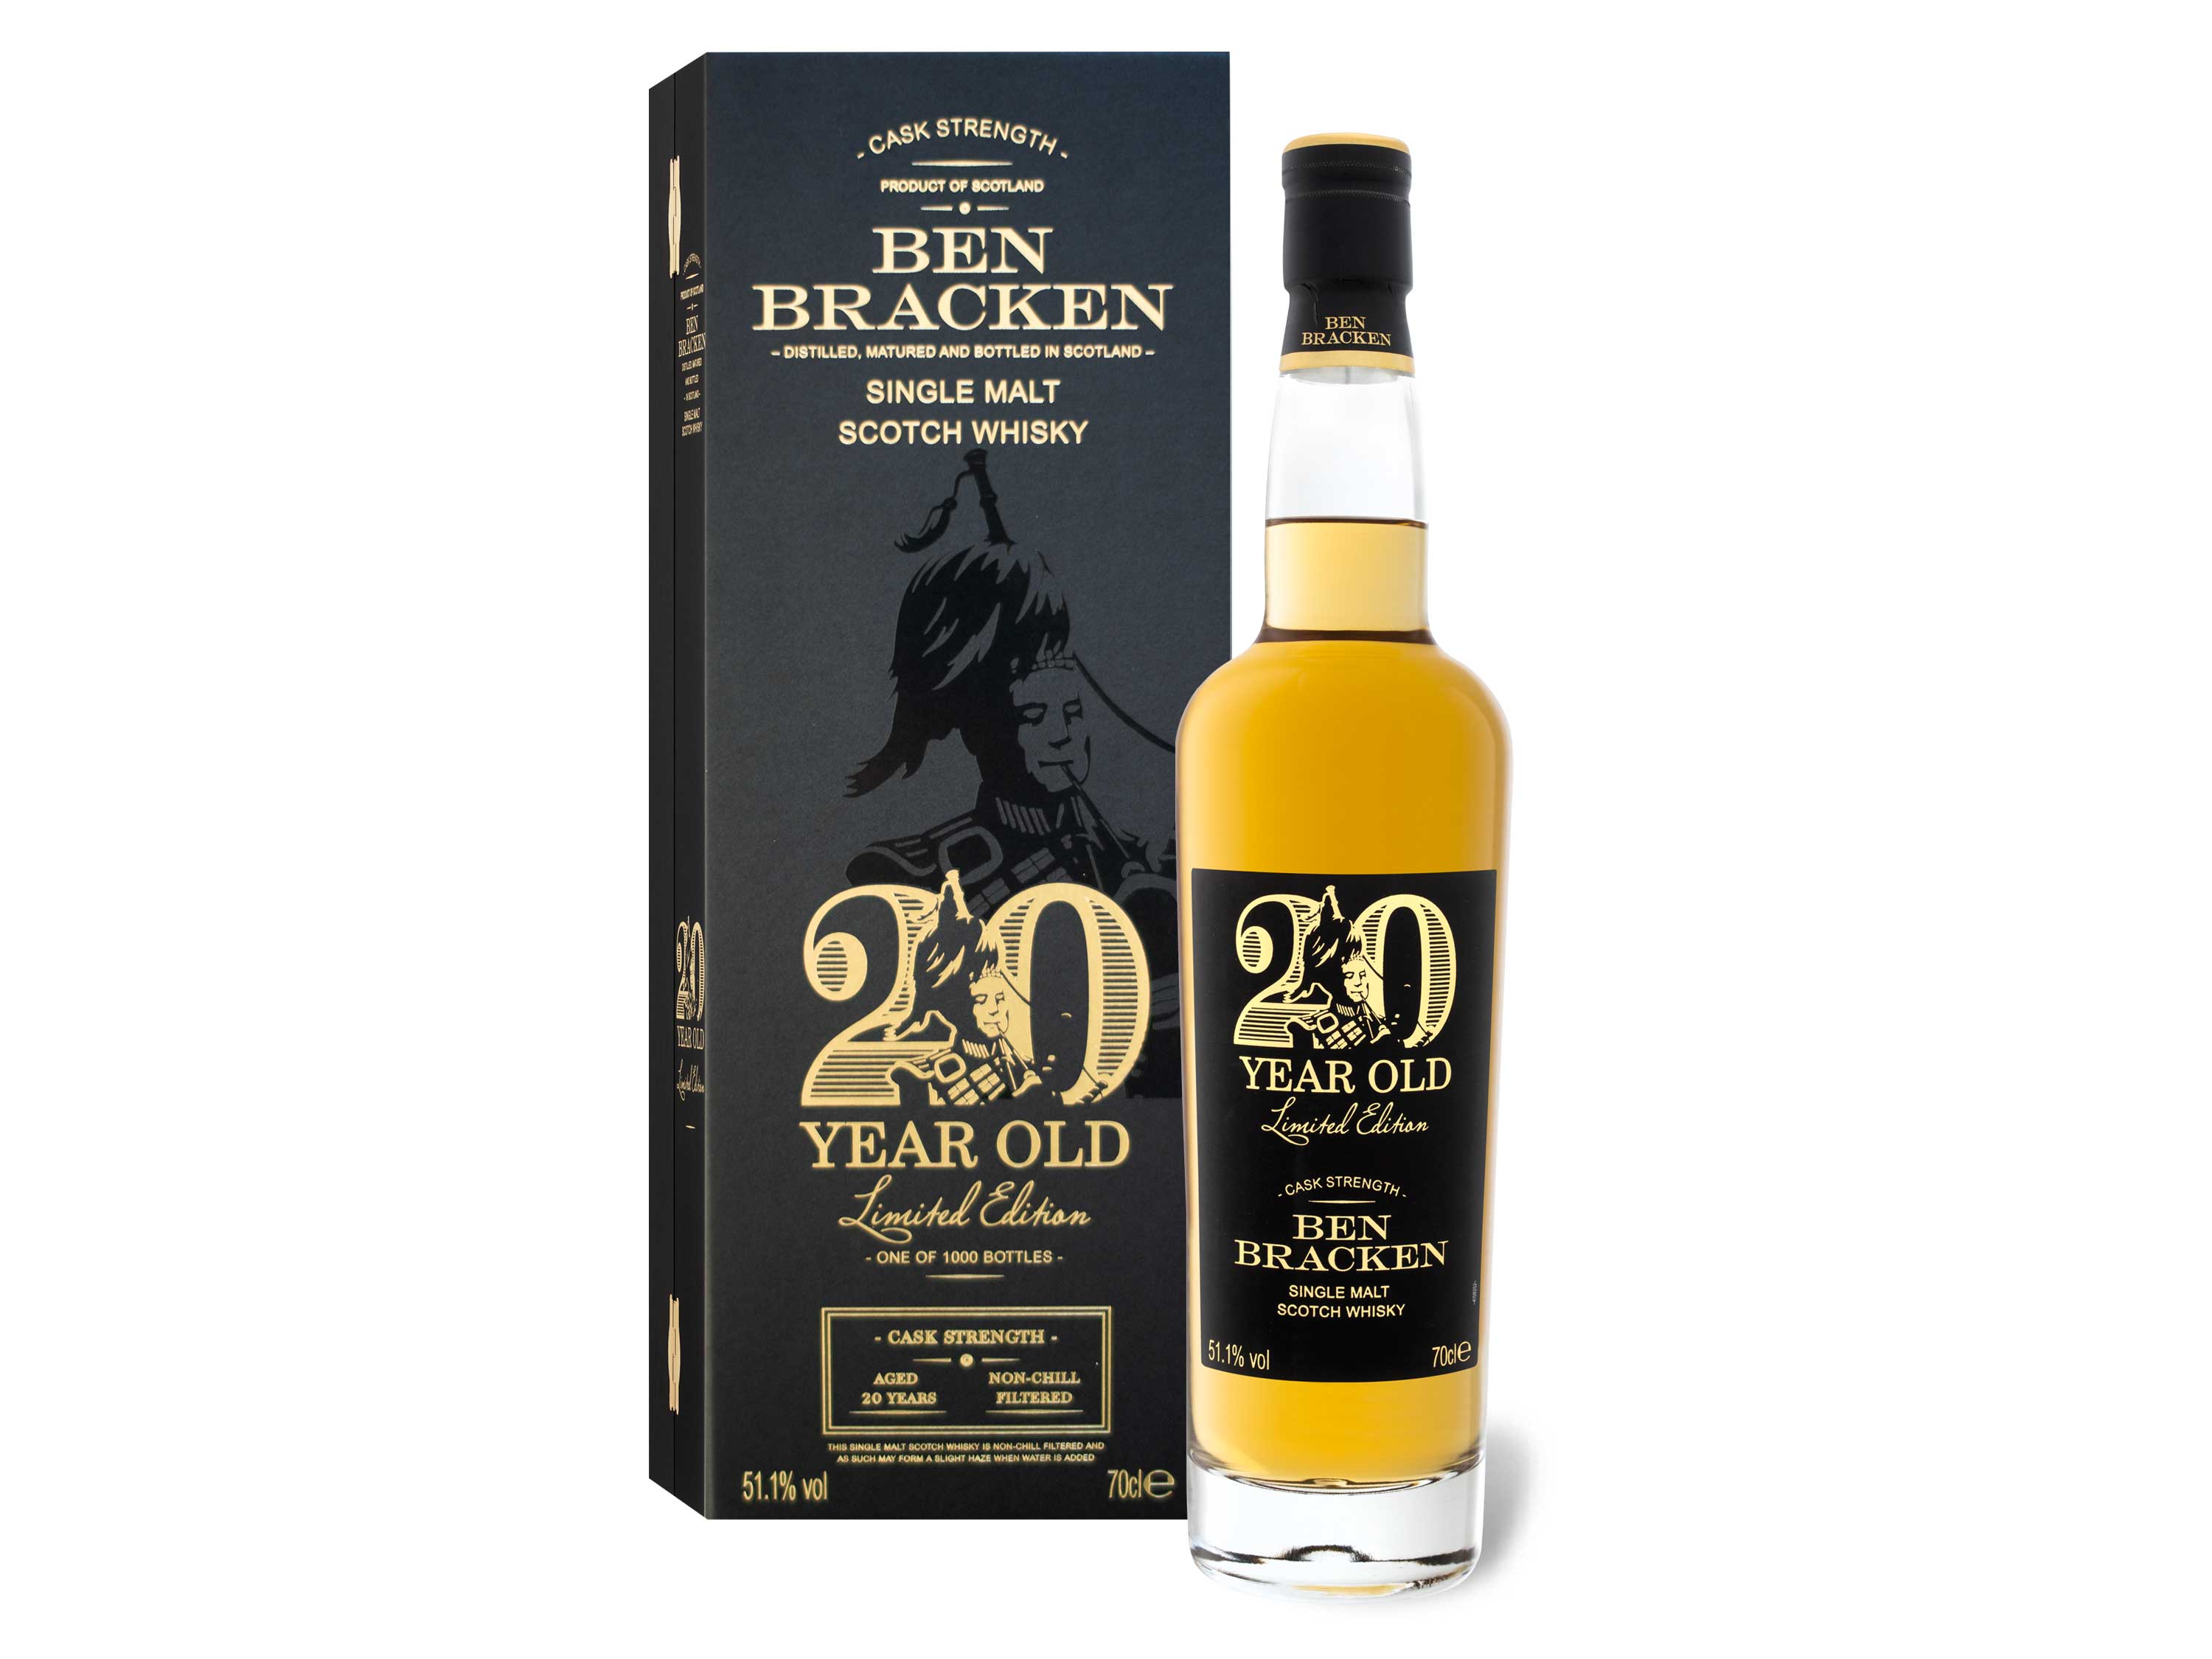 Ben Bracken Single Malt Scotch Whisky Limited Edition Cask Strength 20 Jahre mit Geschenkbox 51.1% Vol